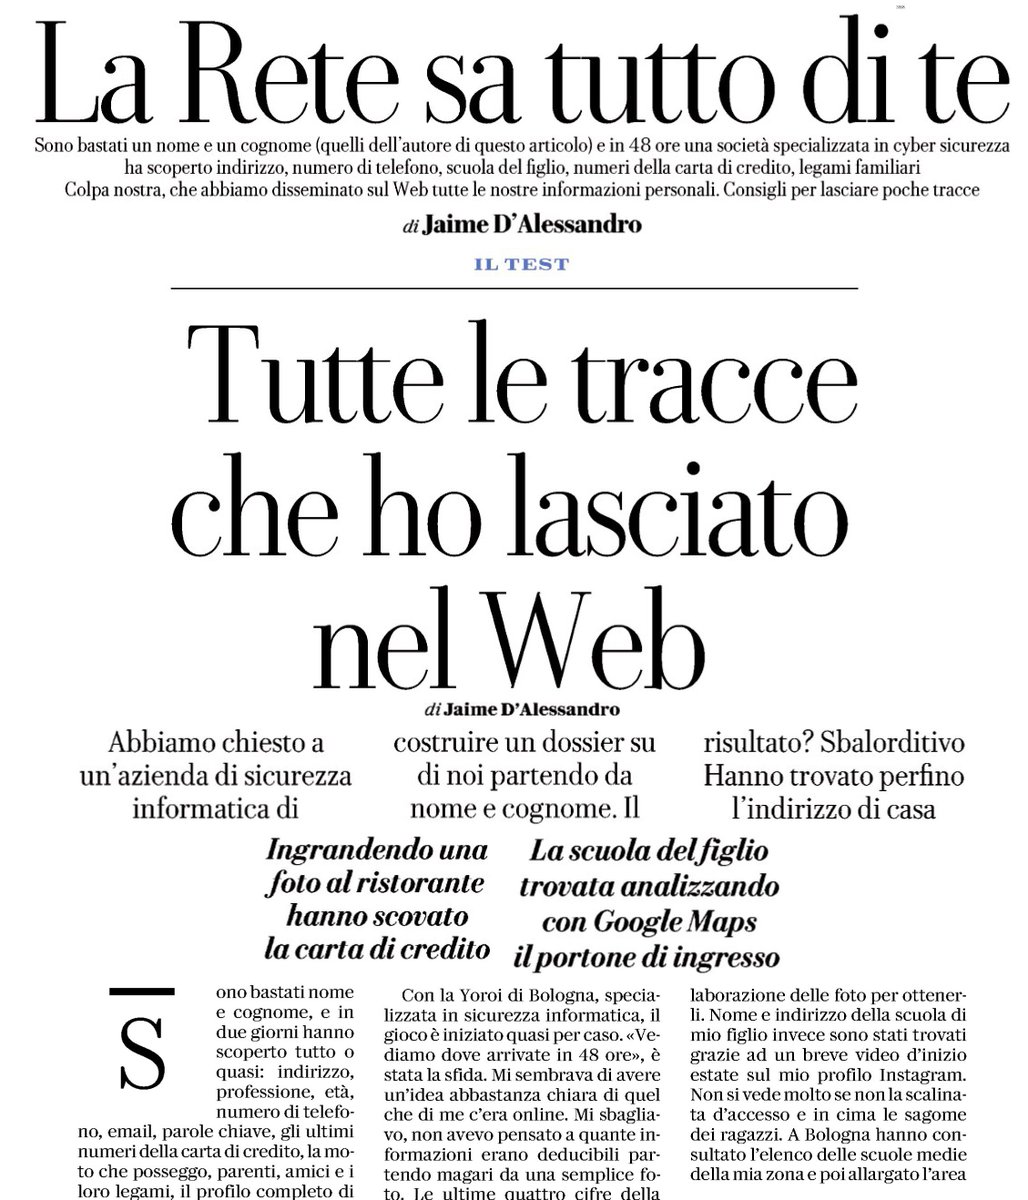 Infocamere On Twitter Su At Repubblica Tutte Le Tracce Che